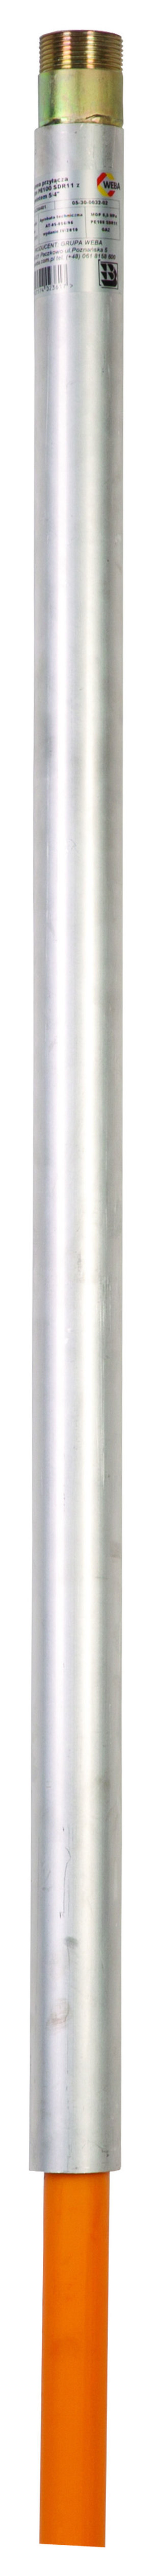 Weba Przyłącze gazu polietylenowe 32mm x 1" 15000mm proste (05-30-0032-03) 1